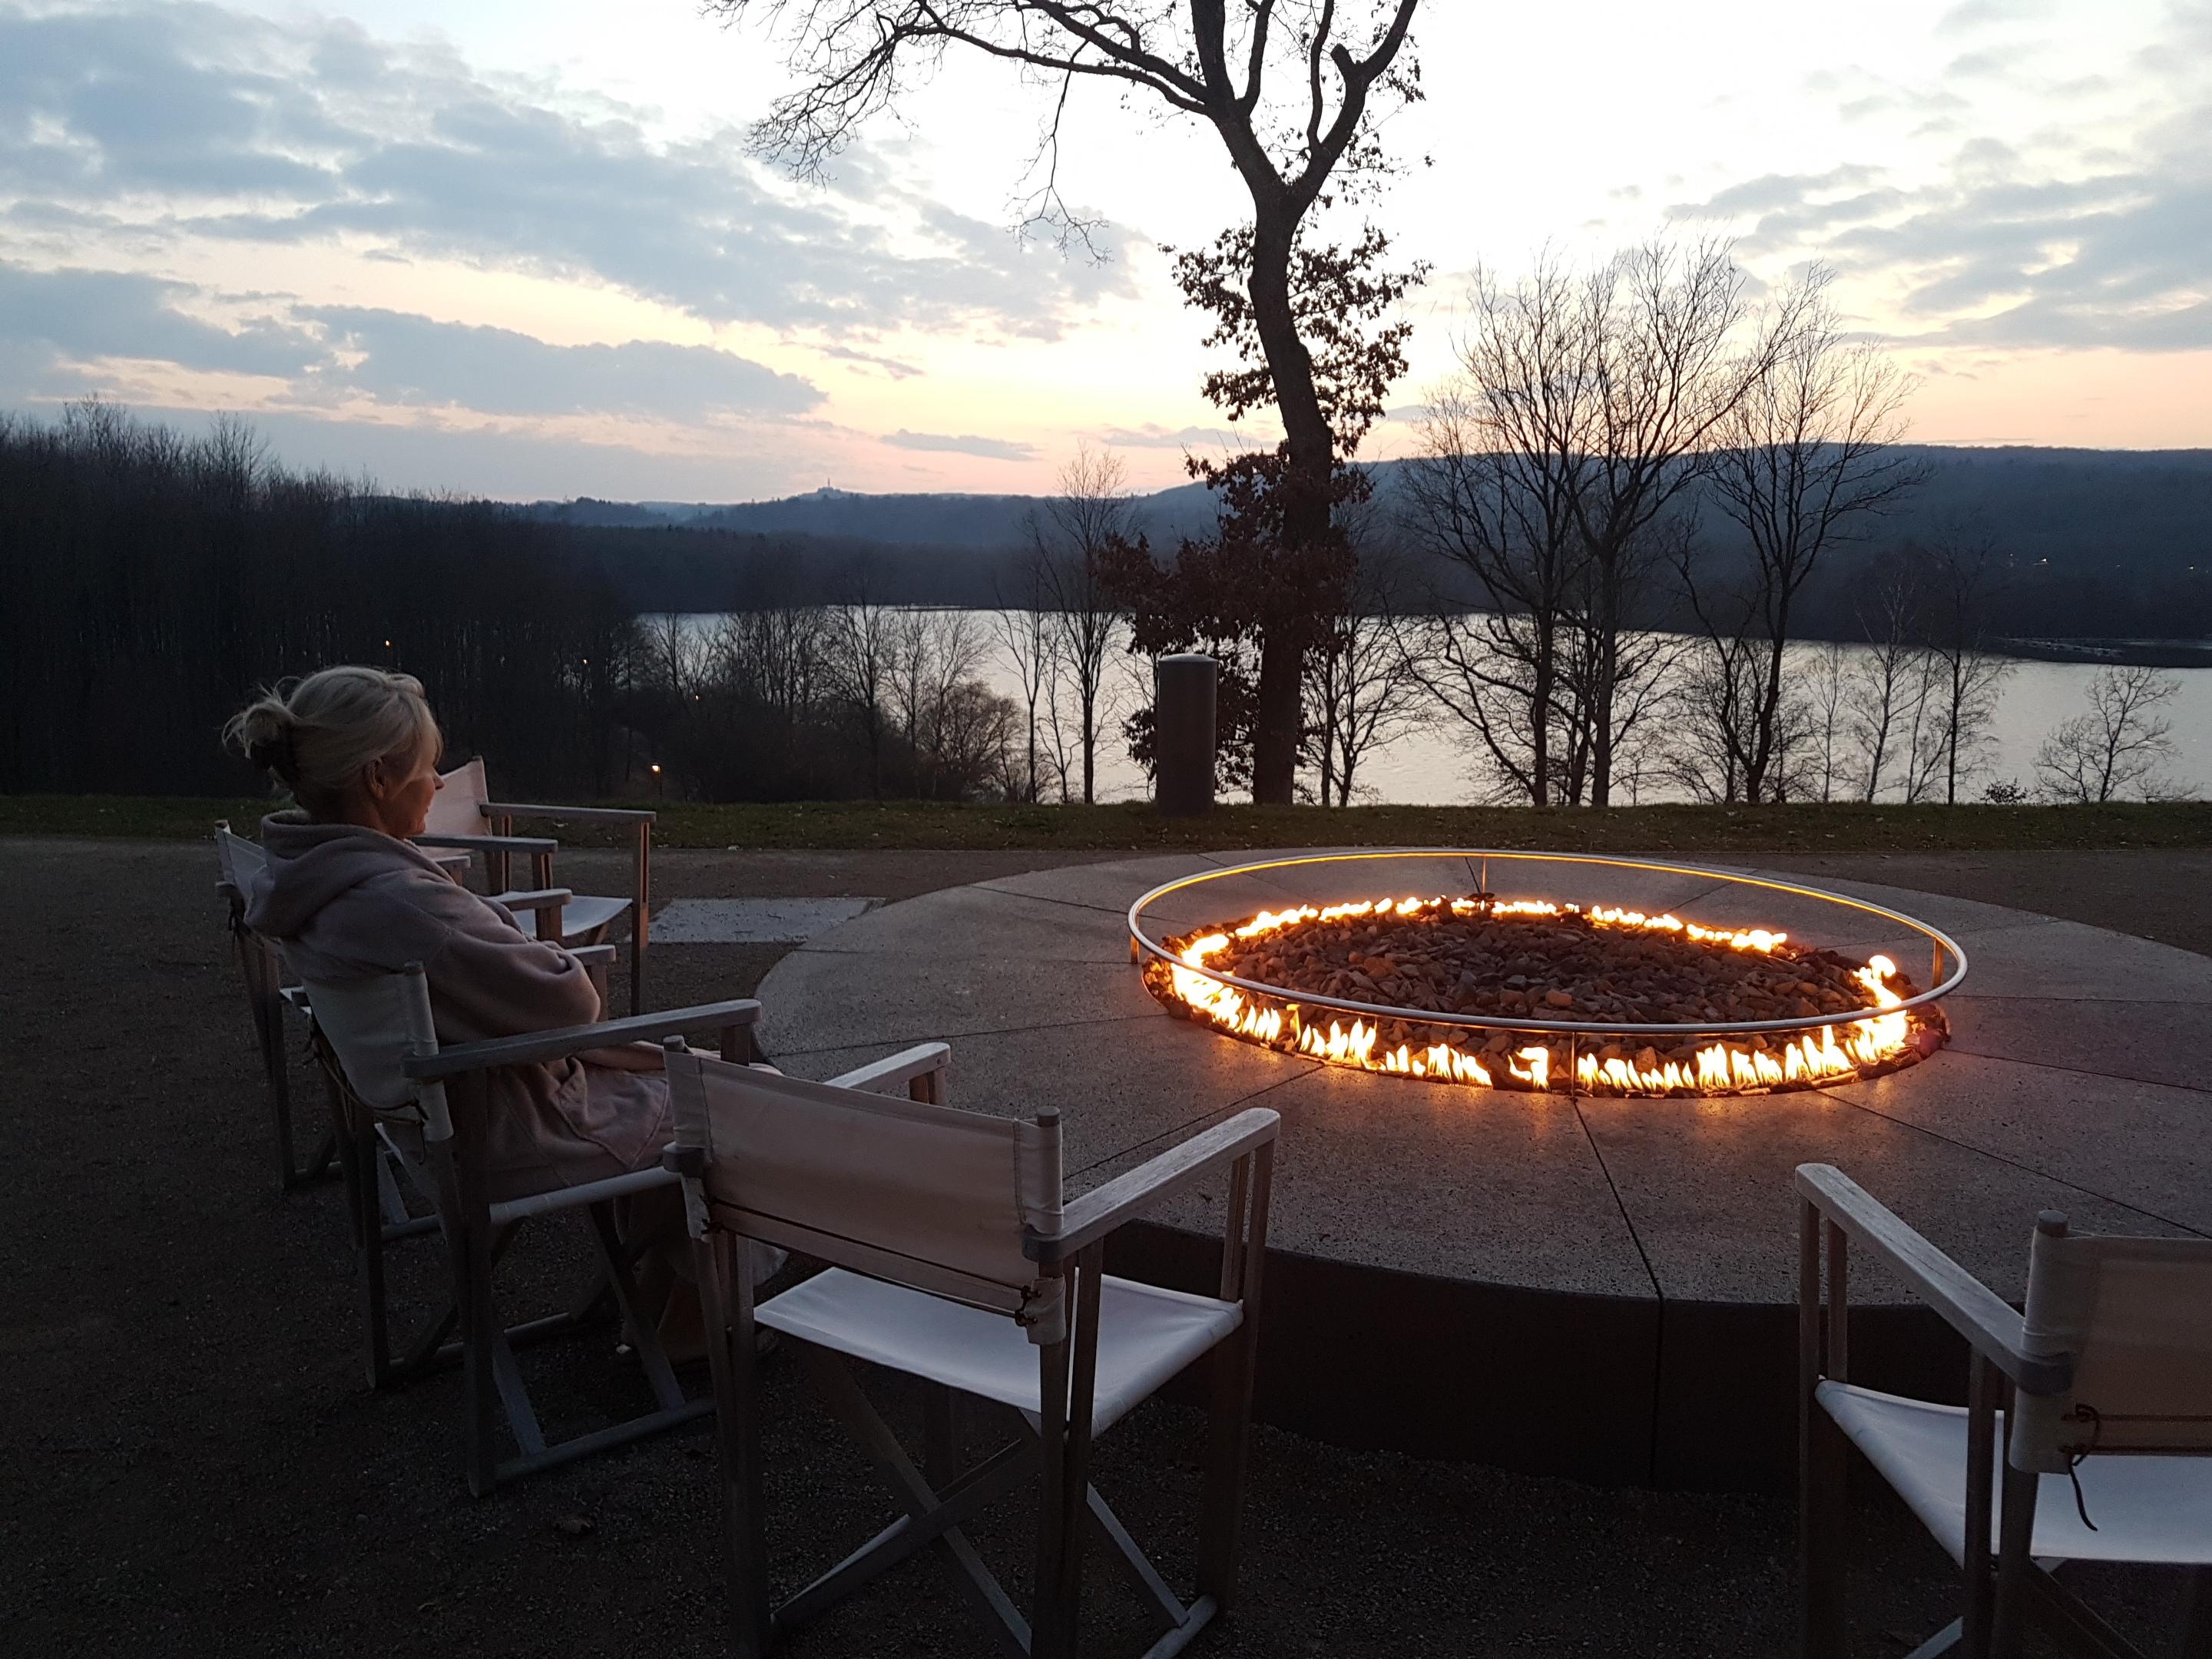 #wellness #beautychallenge
Nach einem Saunagang abends am Feuerring sitzen und auf den See schauen.🤗